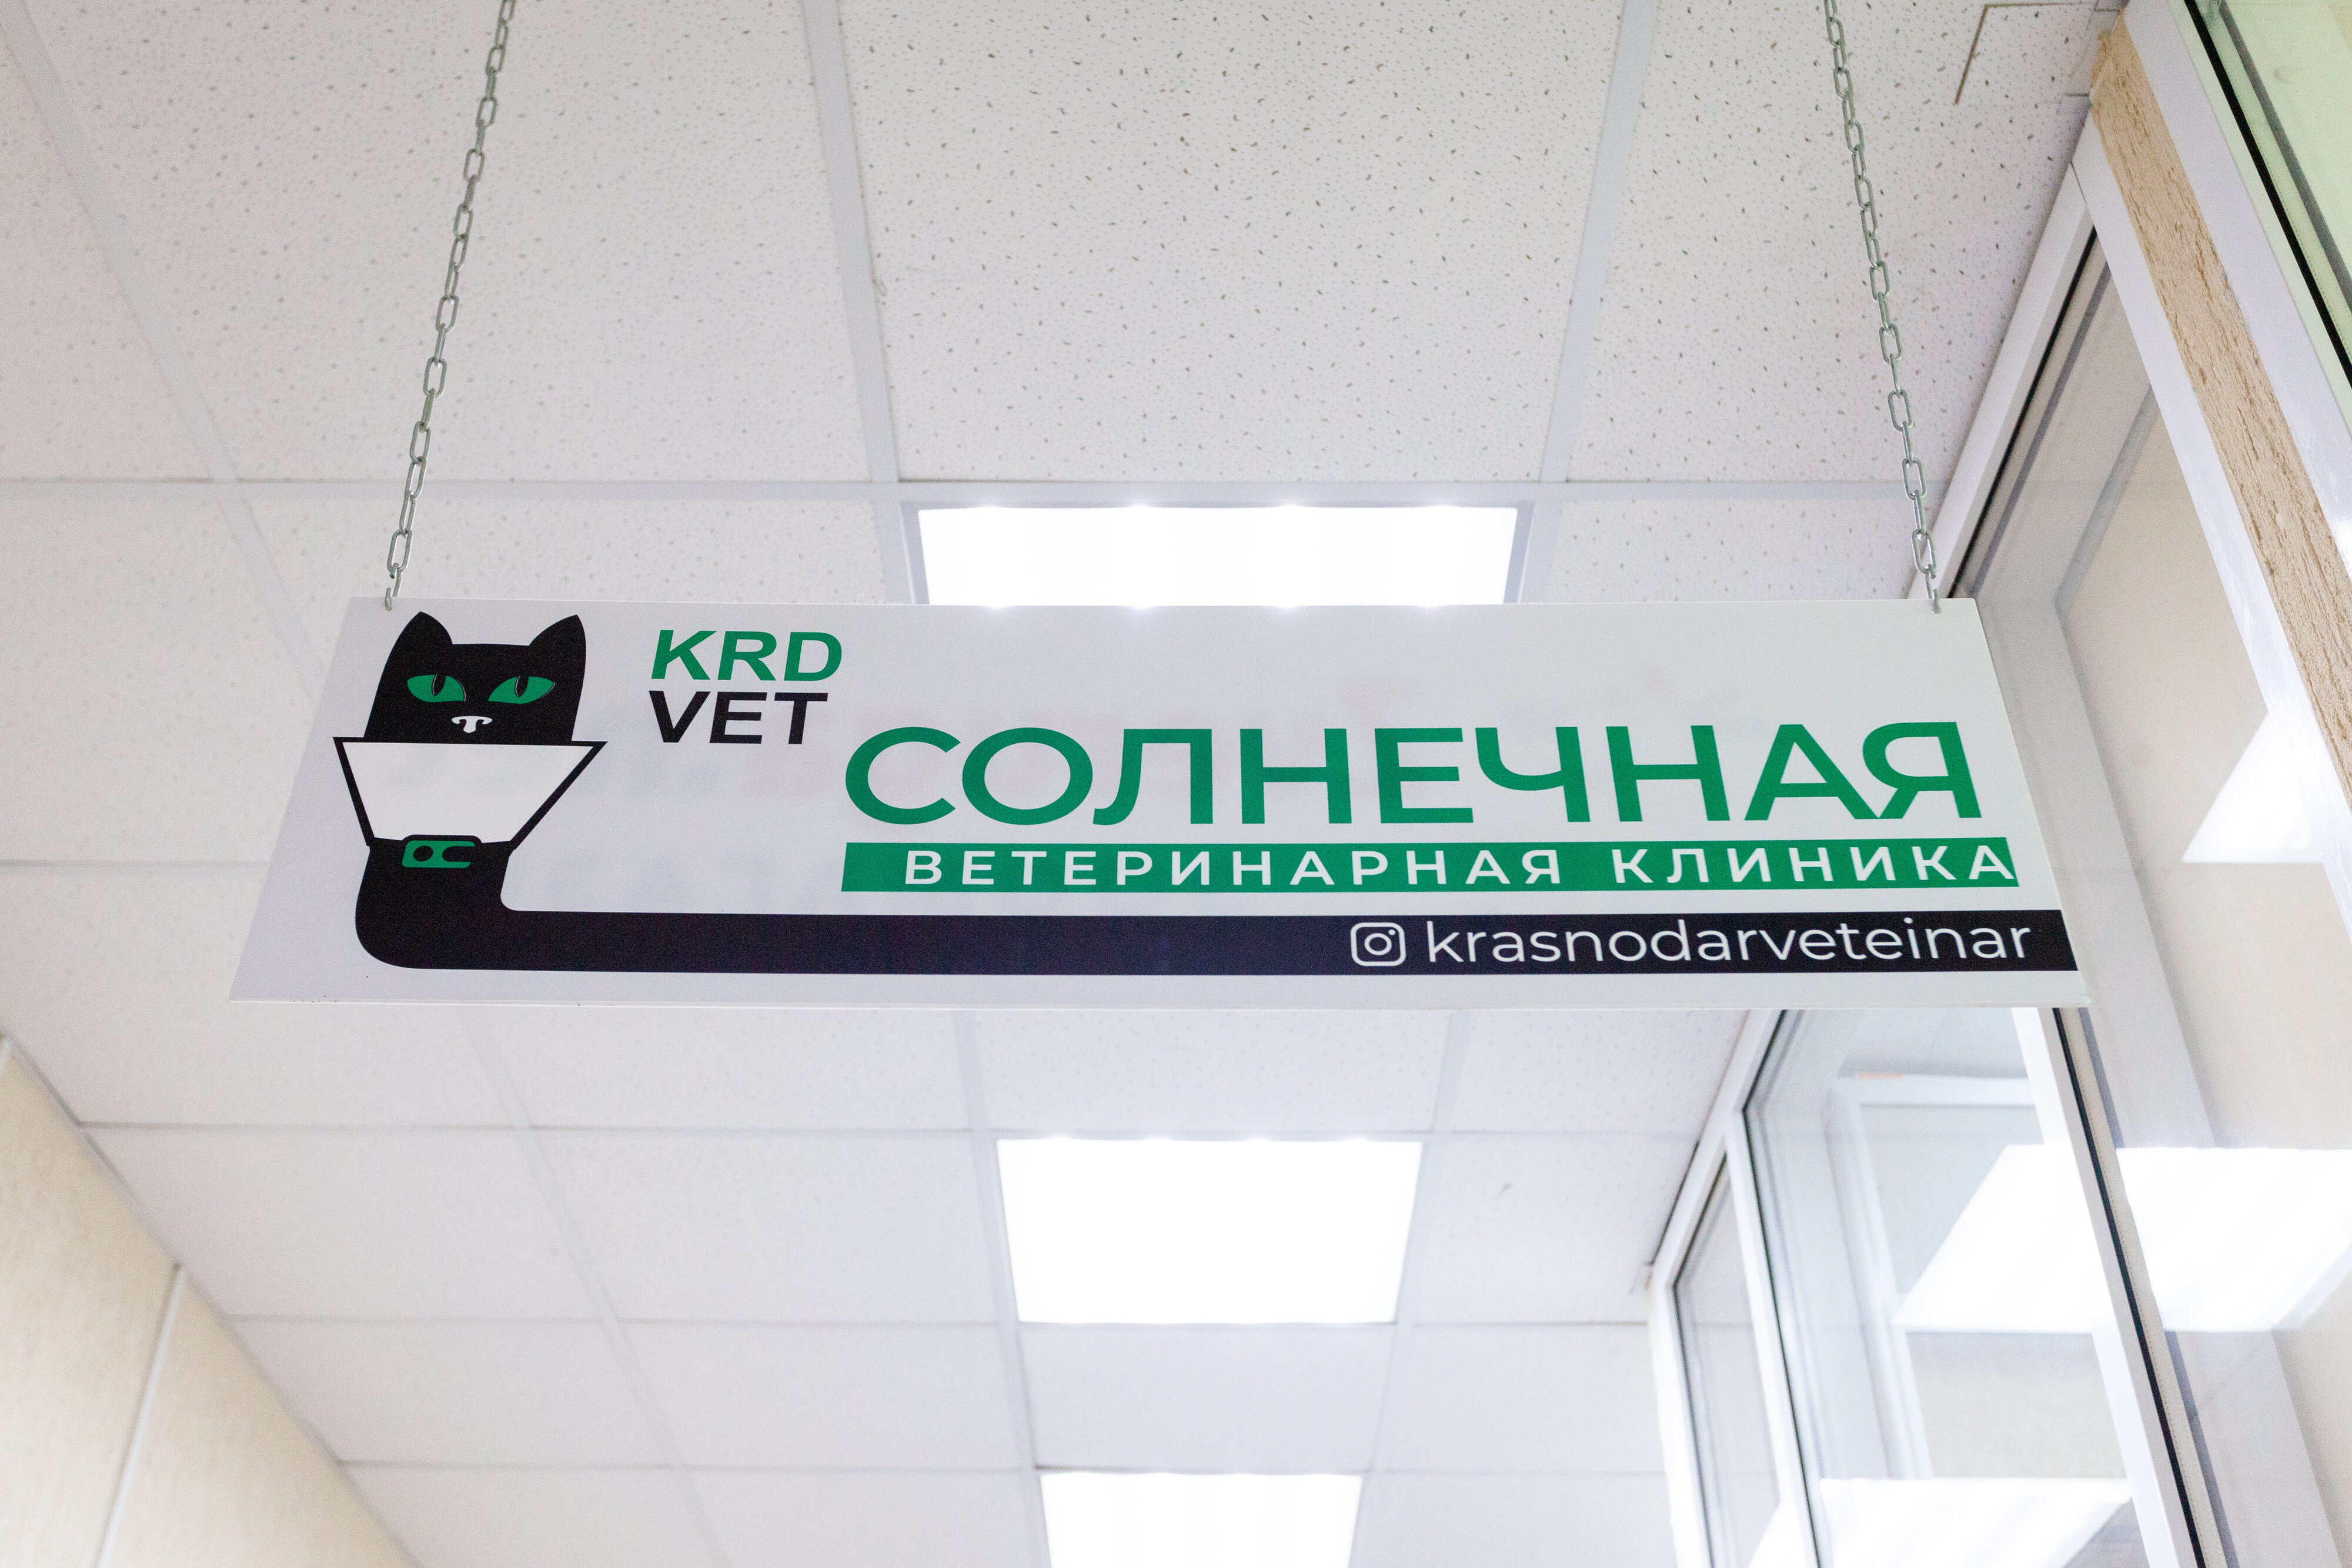 Лучшие ветеринарные клиники Краснодара рядом со мной на карте – рейтинг,  цены, фото, телефоны, адреса, отзывы – Zoon.ru